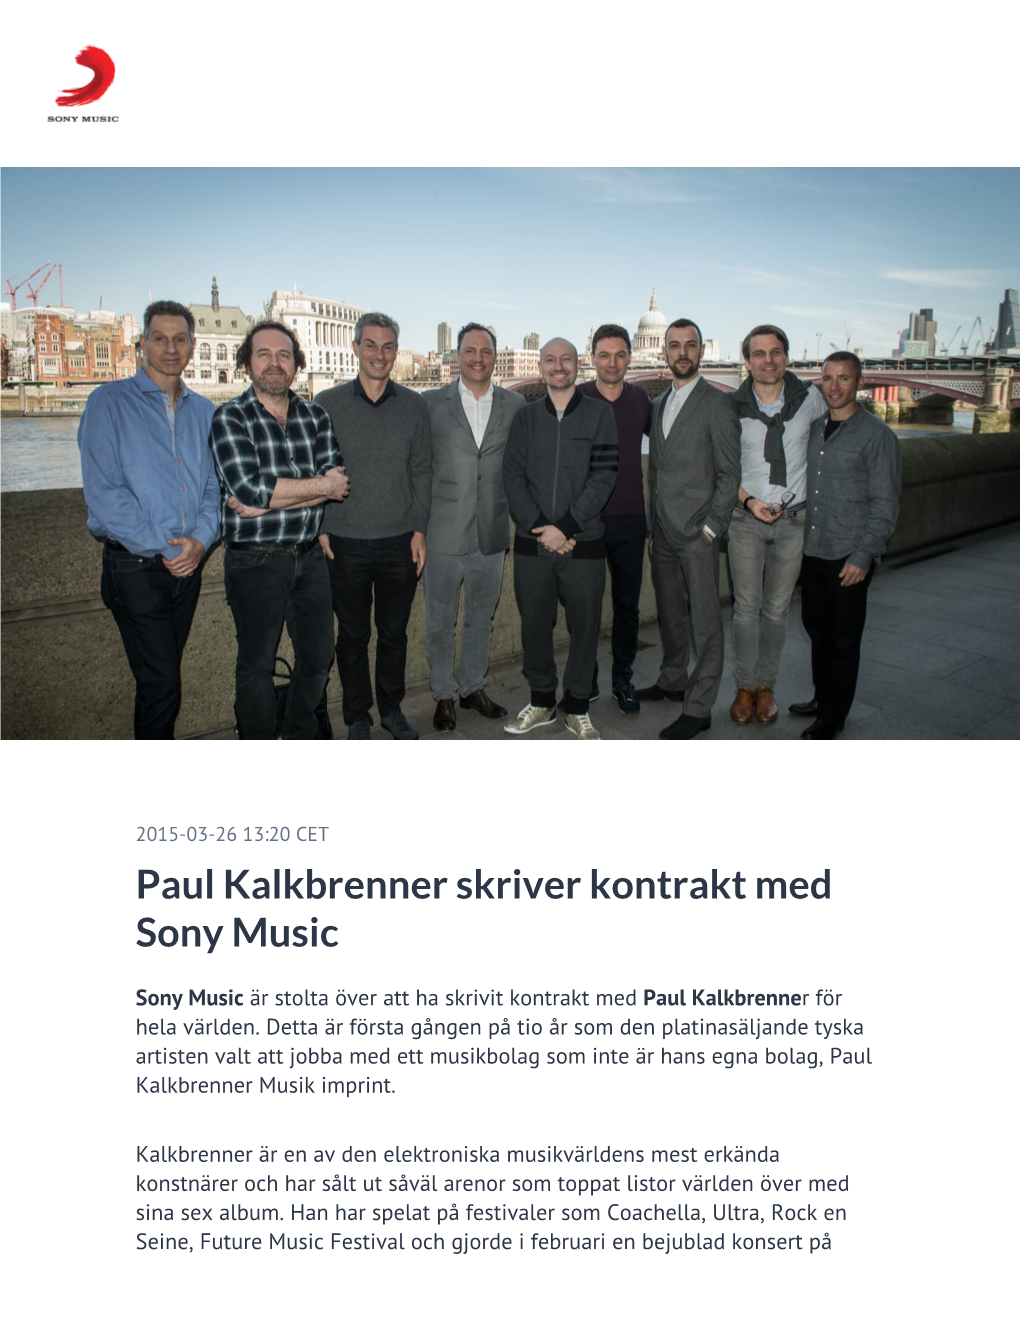 Paul Kalkbrenner Skriver Kontrakt Med Sony Music